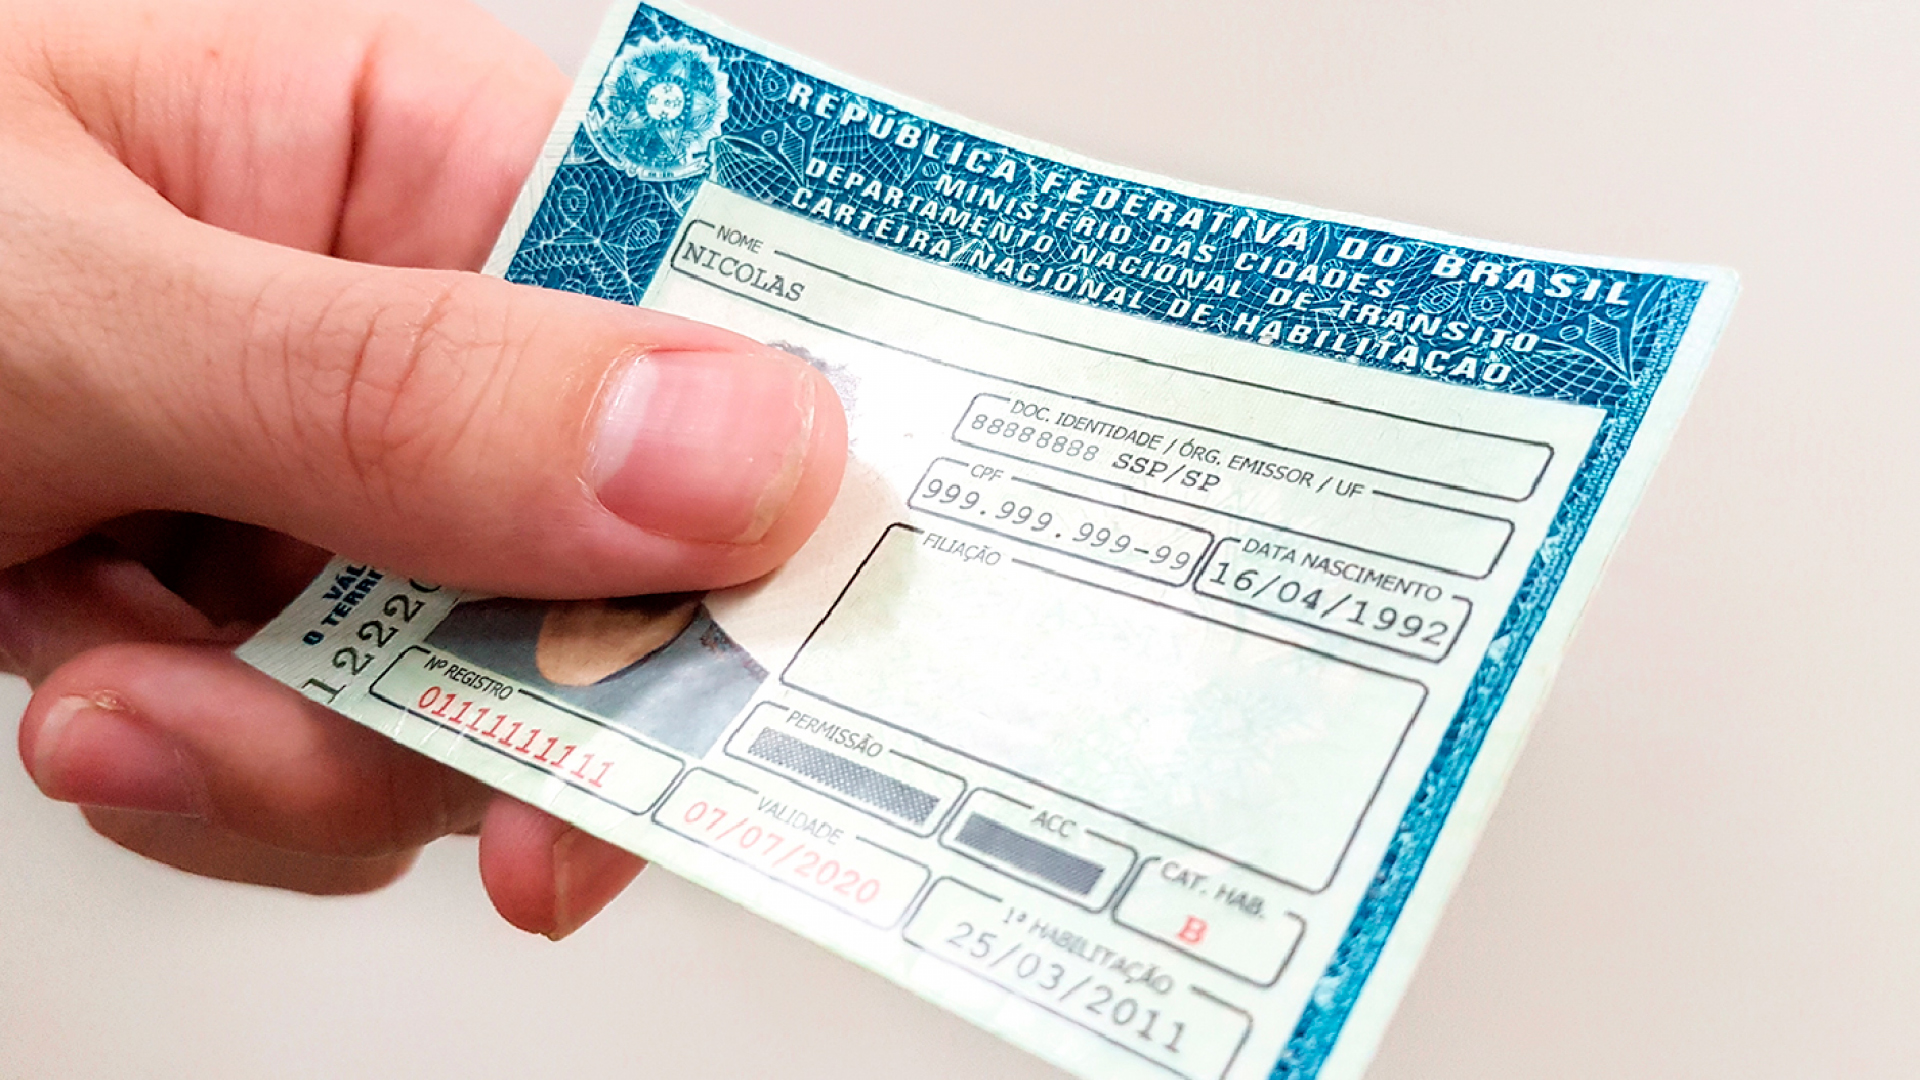 STF autoriza apreensão de CNH de “Mau pagador” como forma de obrigar o pagamento de suas dívidas, passaporte também está incluso